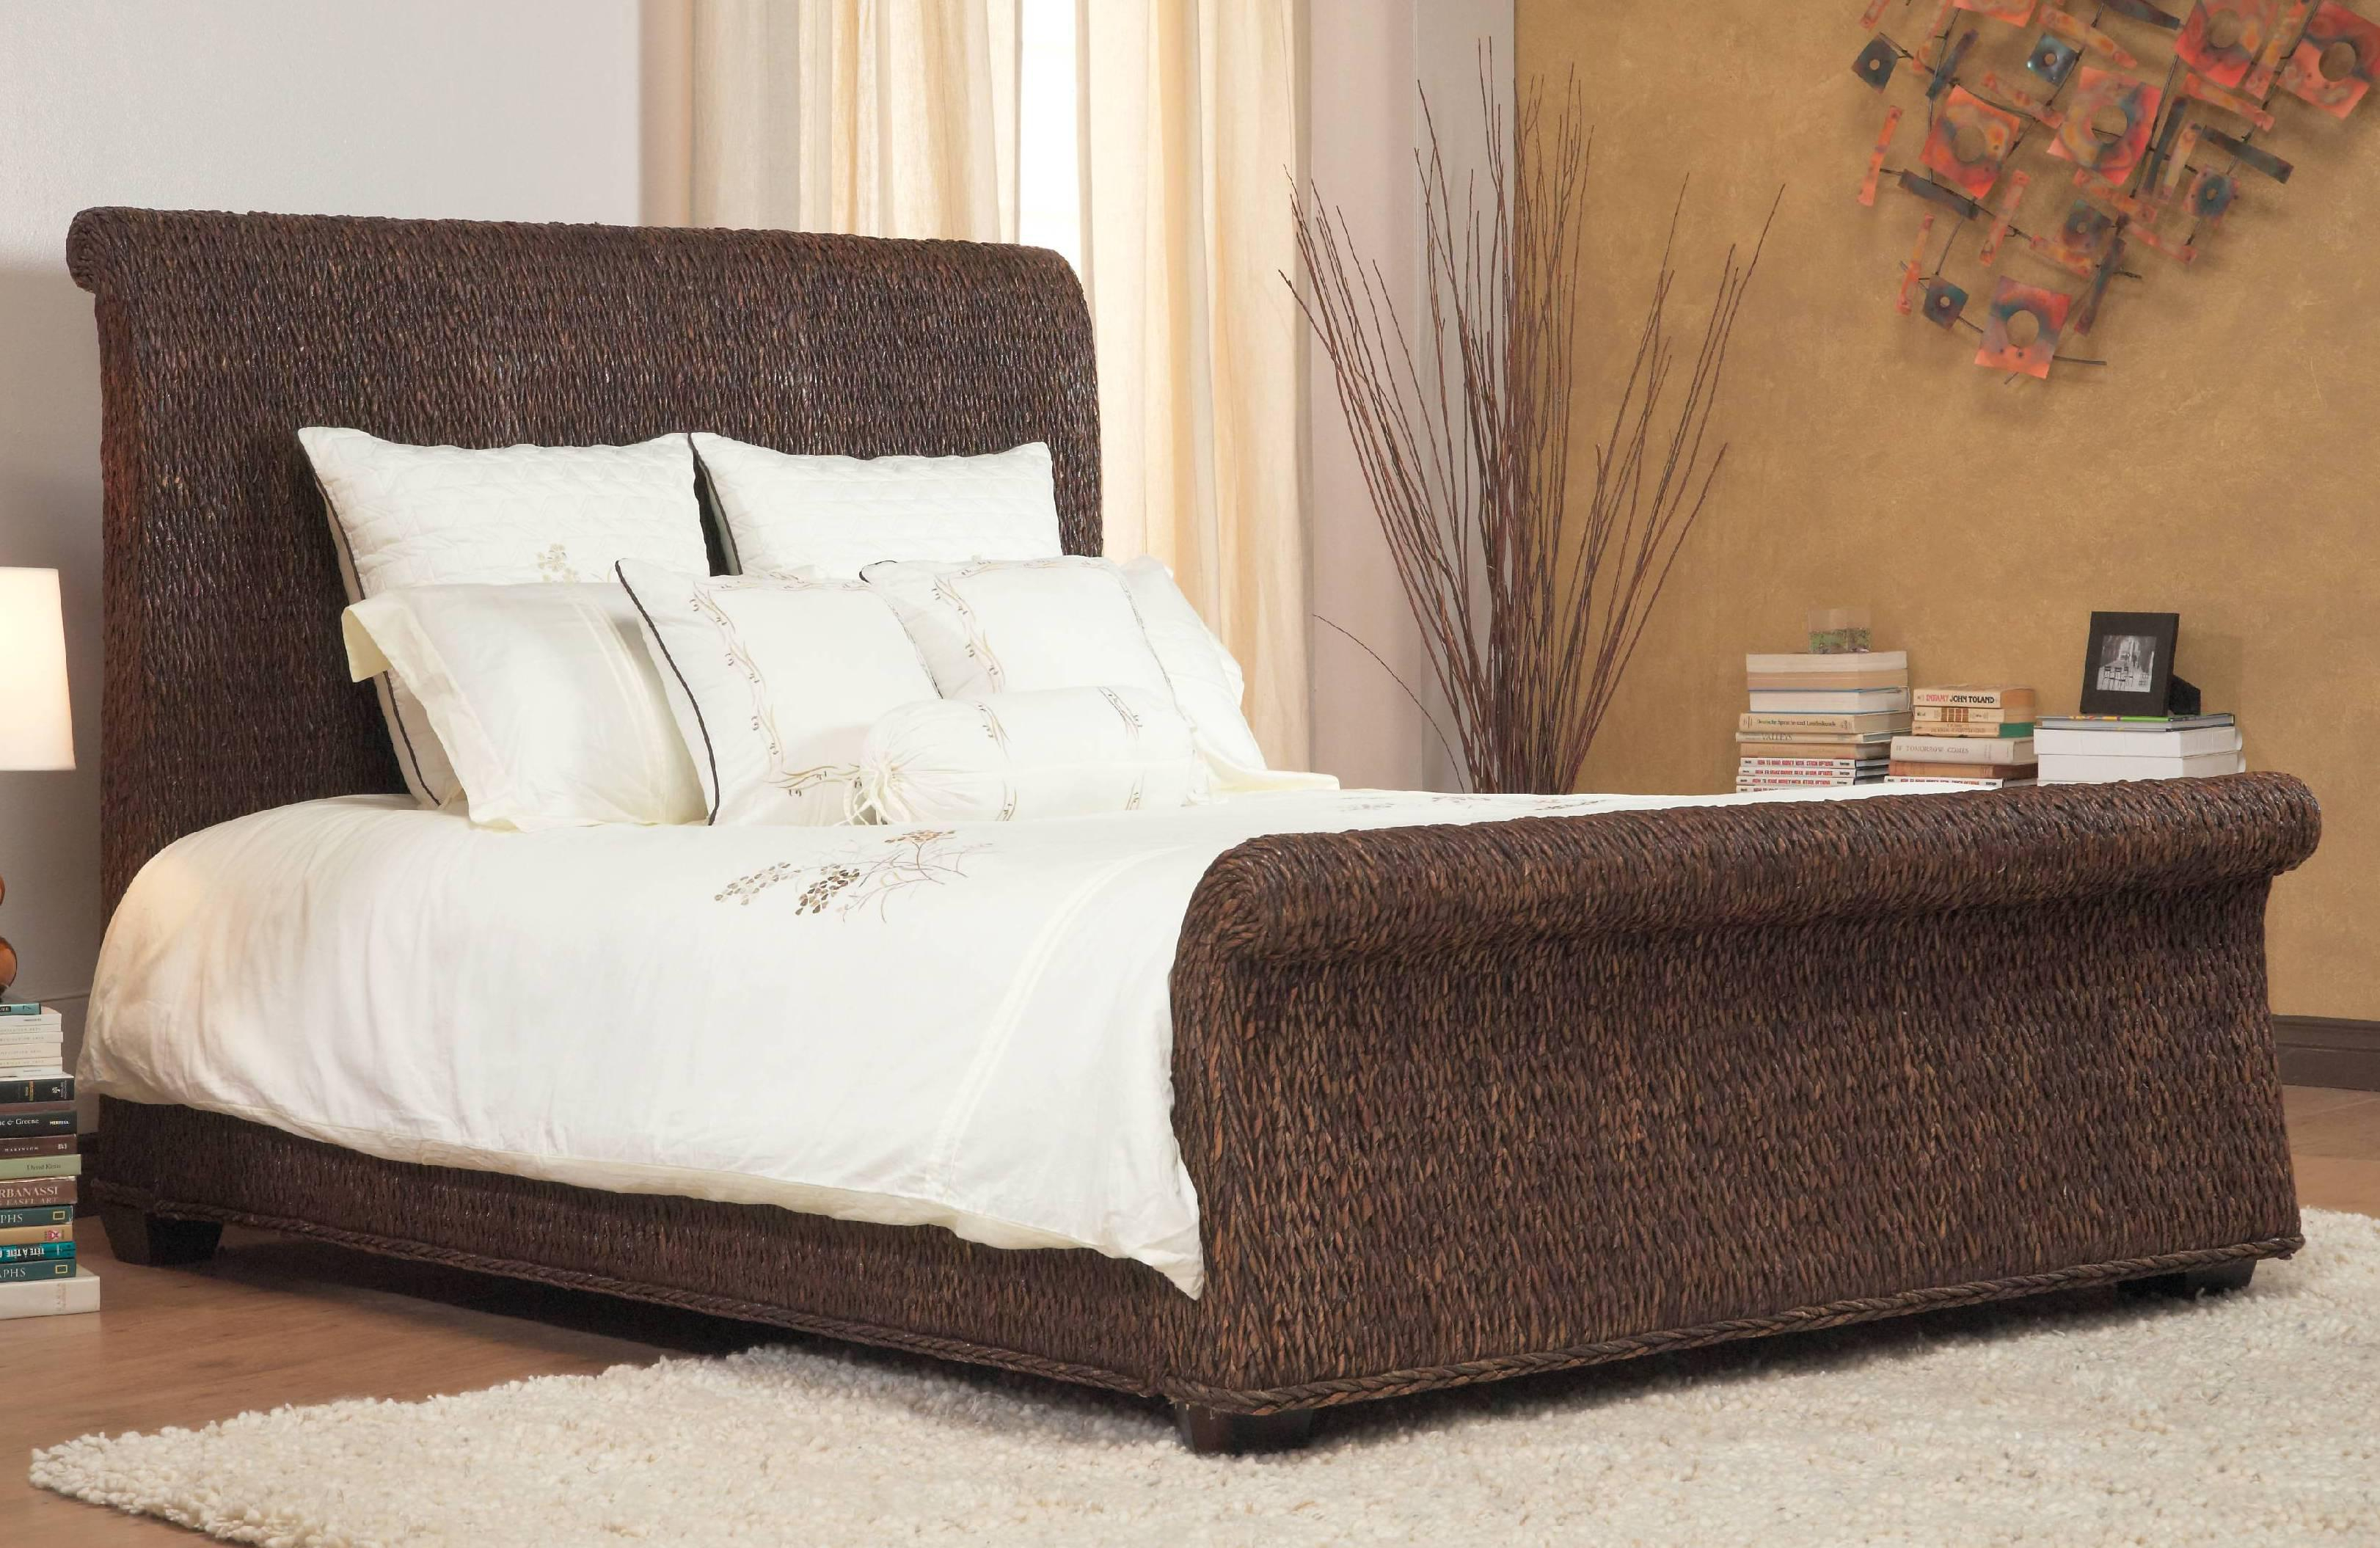 Bedroom Wood Wicker Furniture White Wicker Bedroom Rattan Outdoor regarding measurements 3244 X 2110